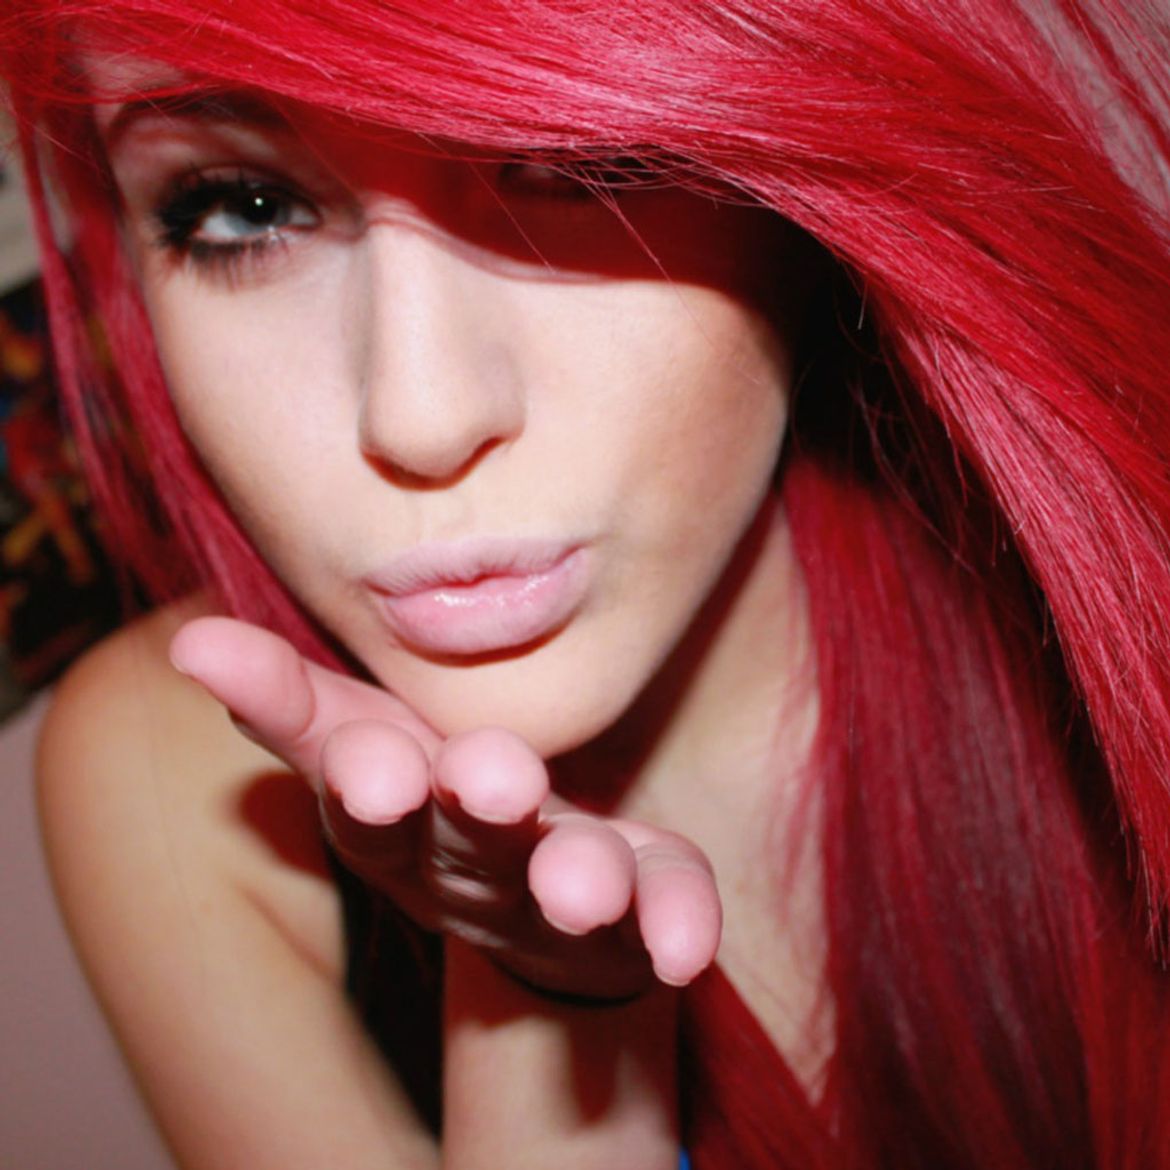 Девушка с красными волосами фото. Алые волосы. Девушка с красными волосами. Красивые девушки с красными волосами. Милая девушка с красными волосами.